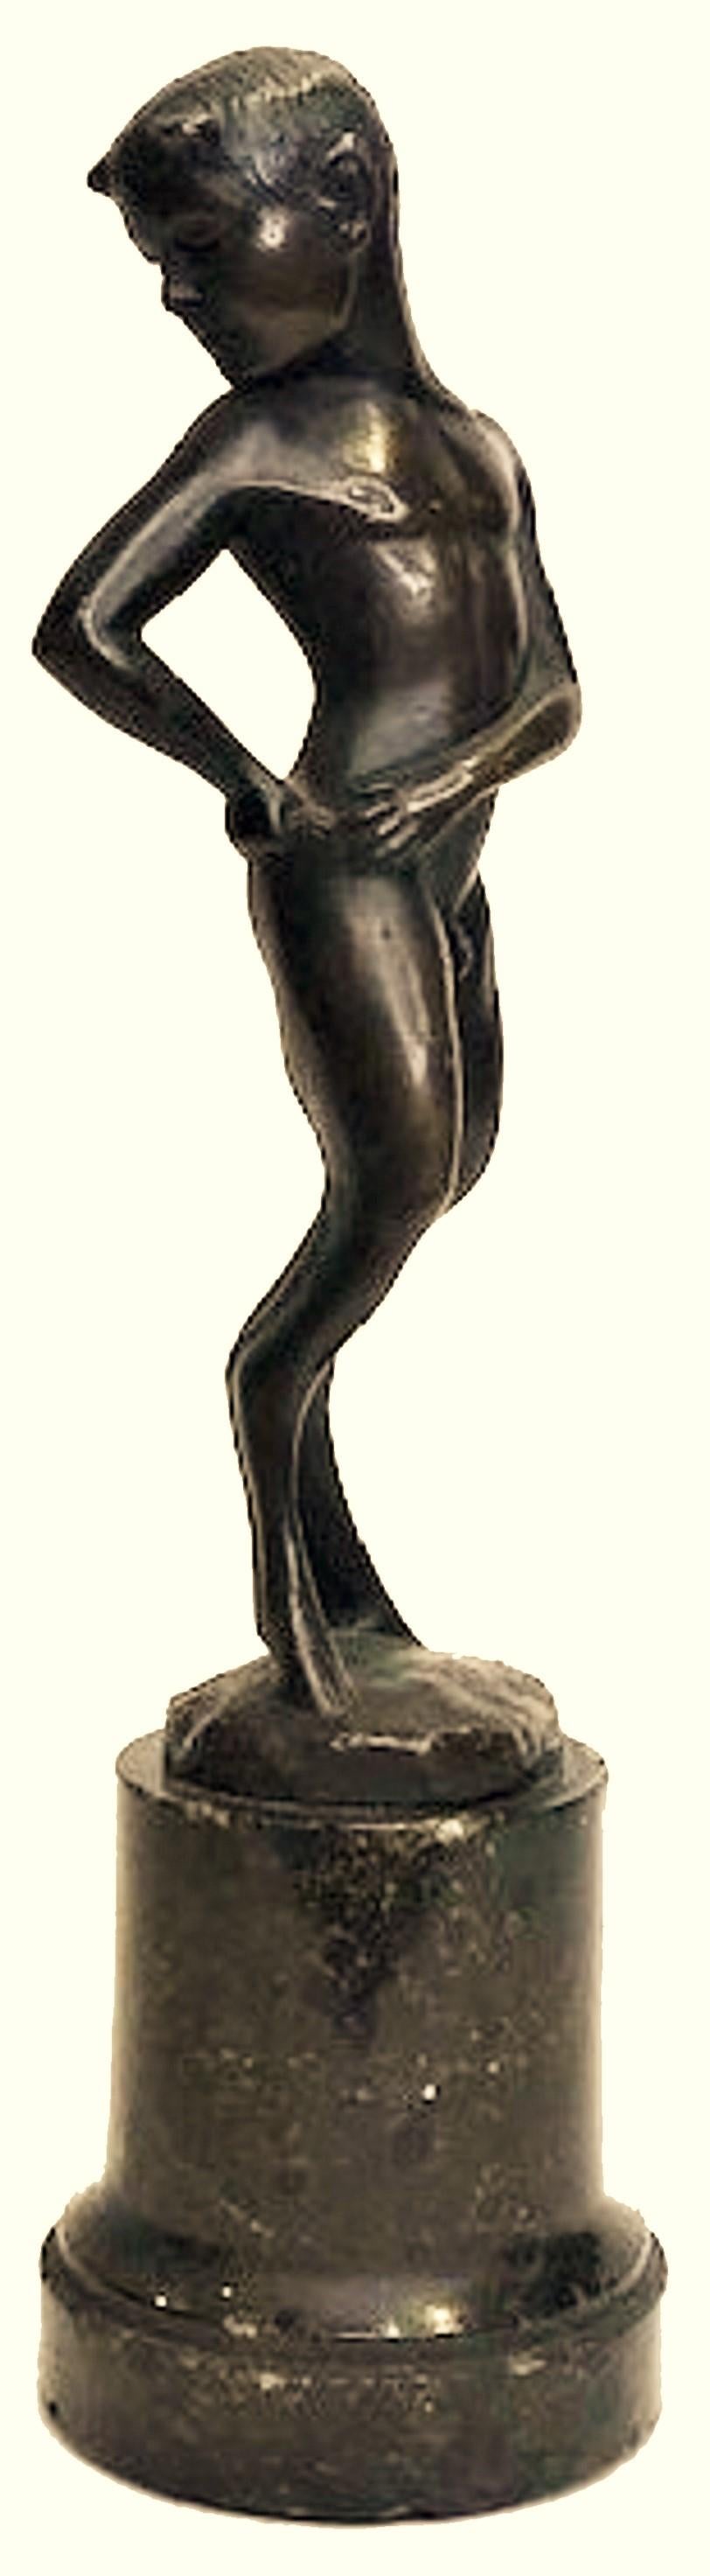 Probablement autrichienne, cette ravissante figurine Jugenstil en bronze patiné noir sur son piédestal en marbre d'origine représente un jeune fauve qui vérifie la taille de sa queue pour voir s'il a grandi et mûri.